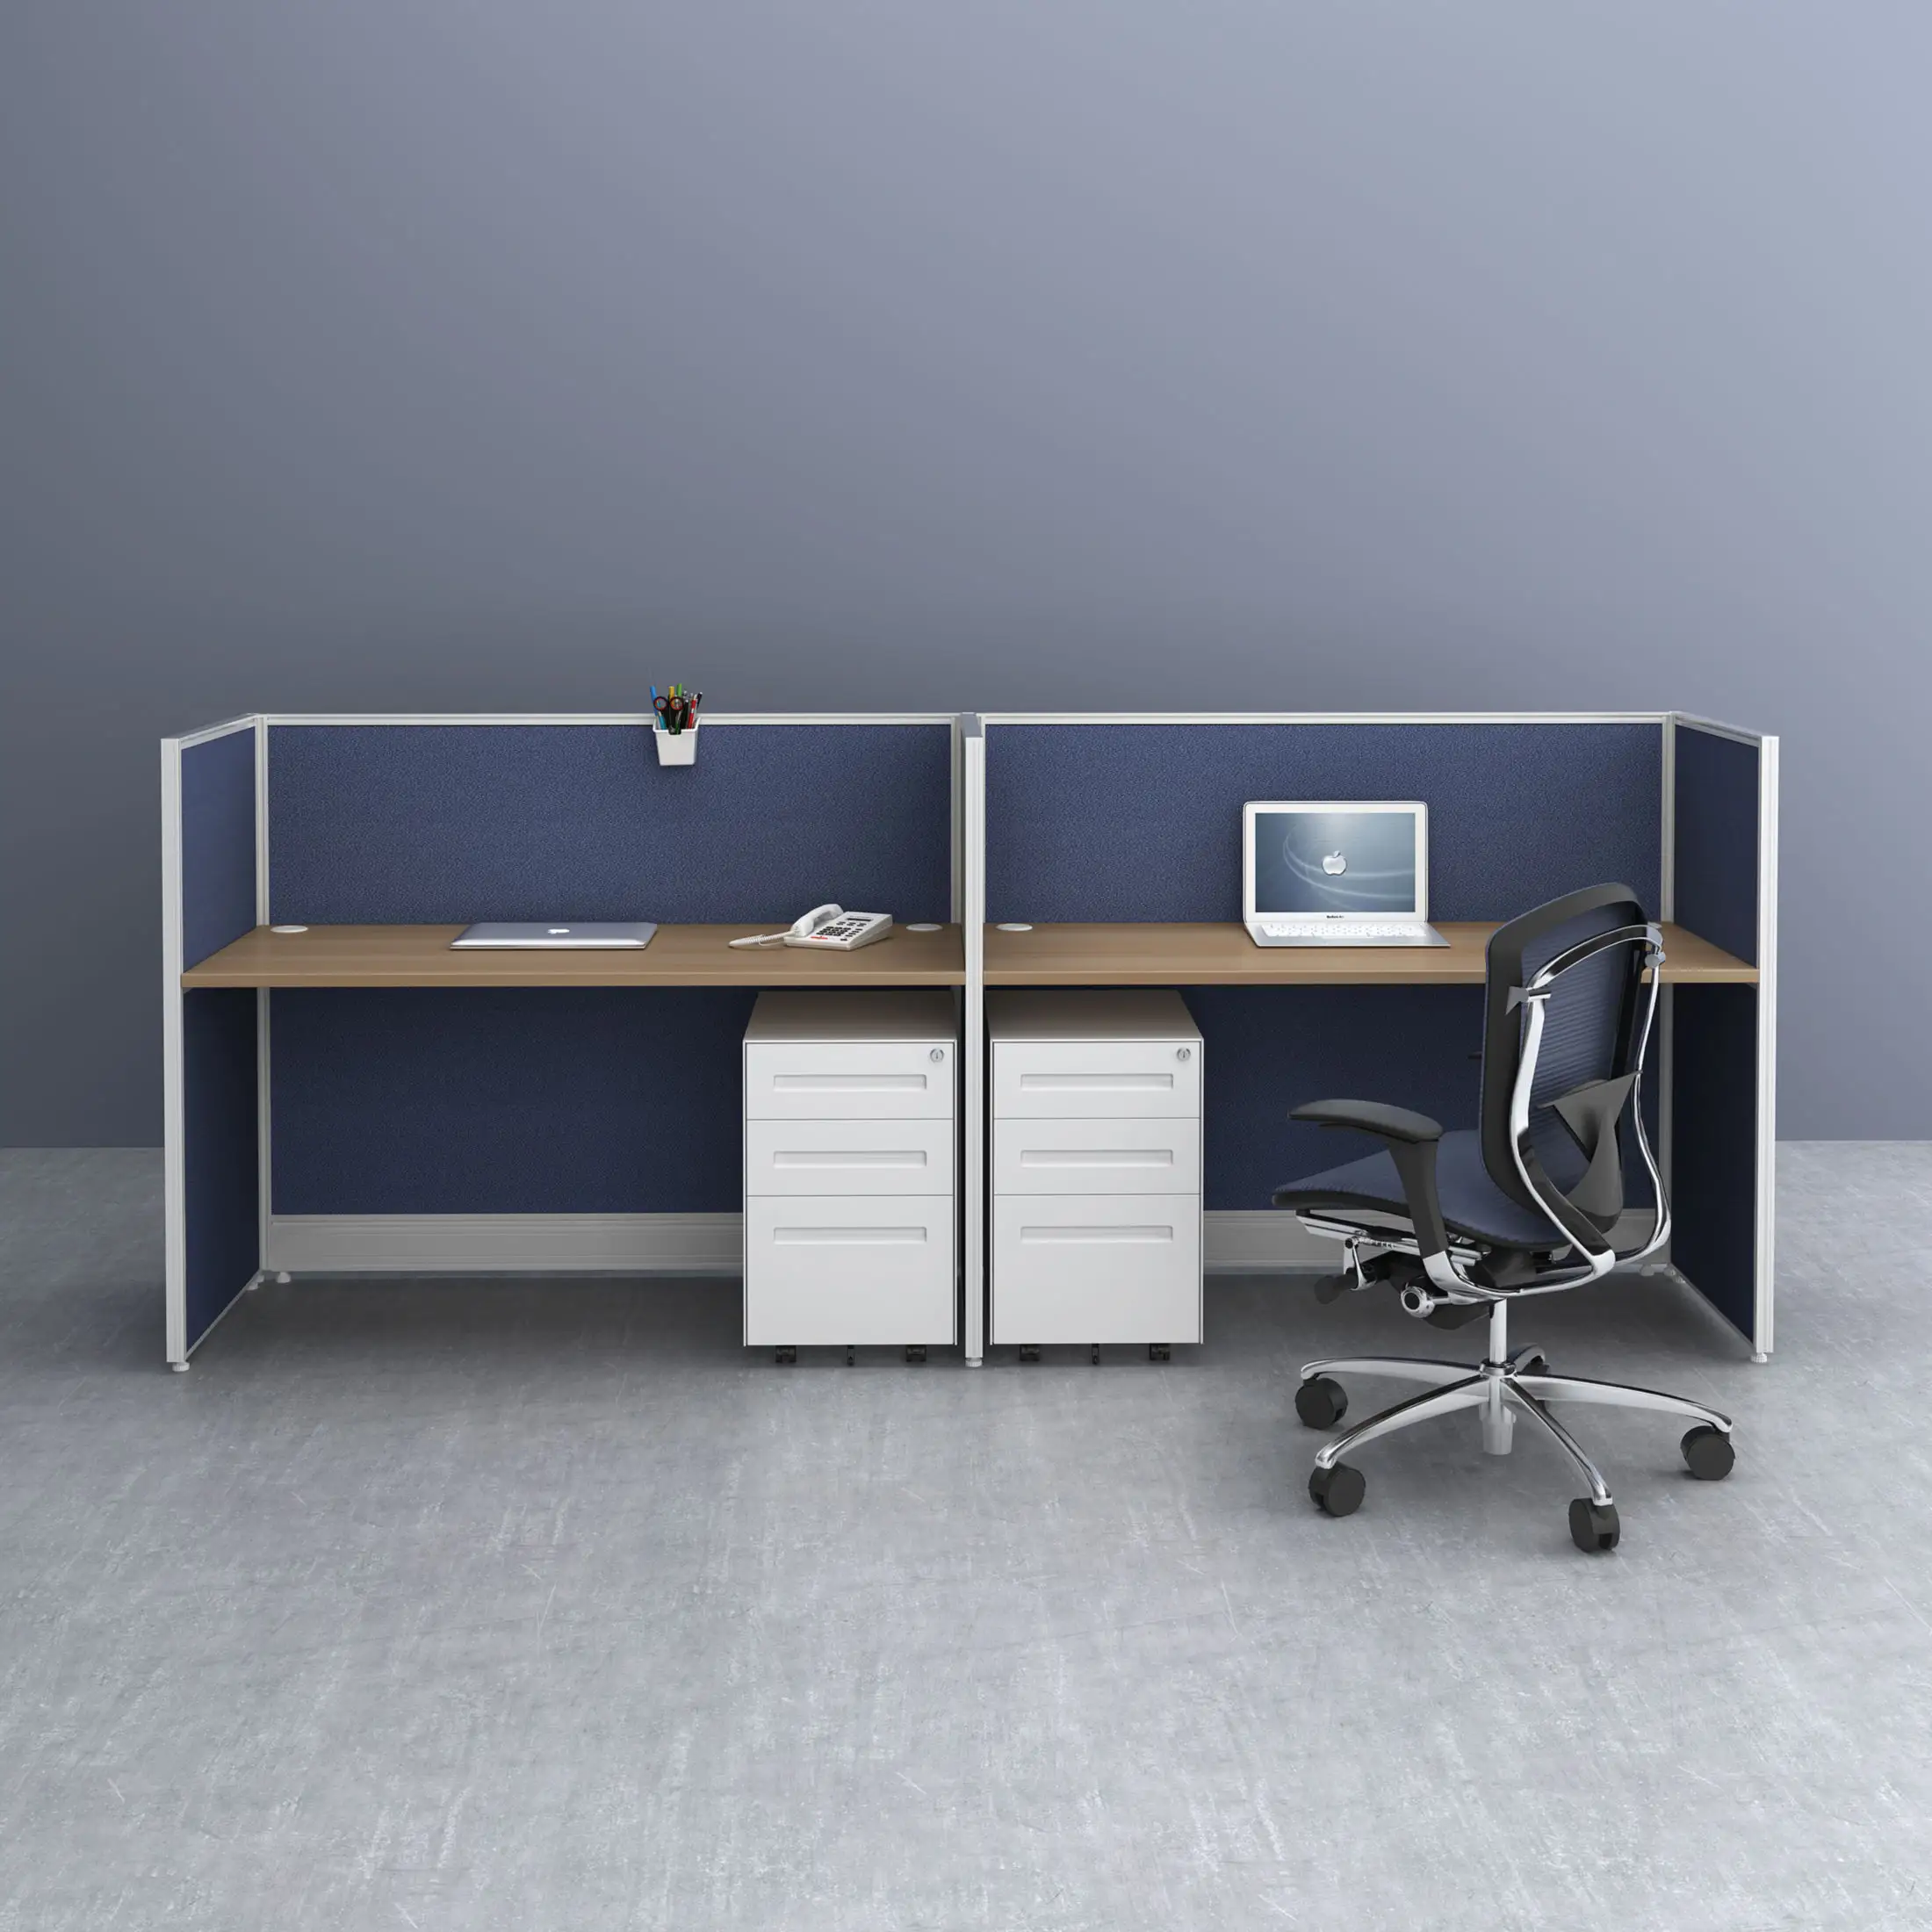 Административная мебель облегчает сотрудникам доступ к разным рабочим помещениям